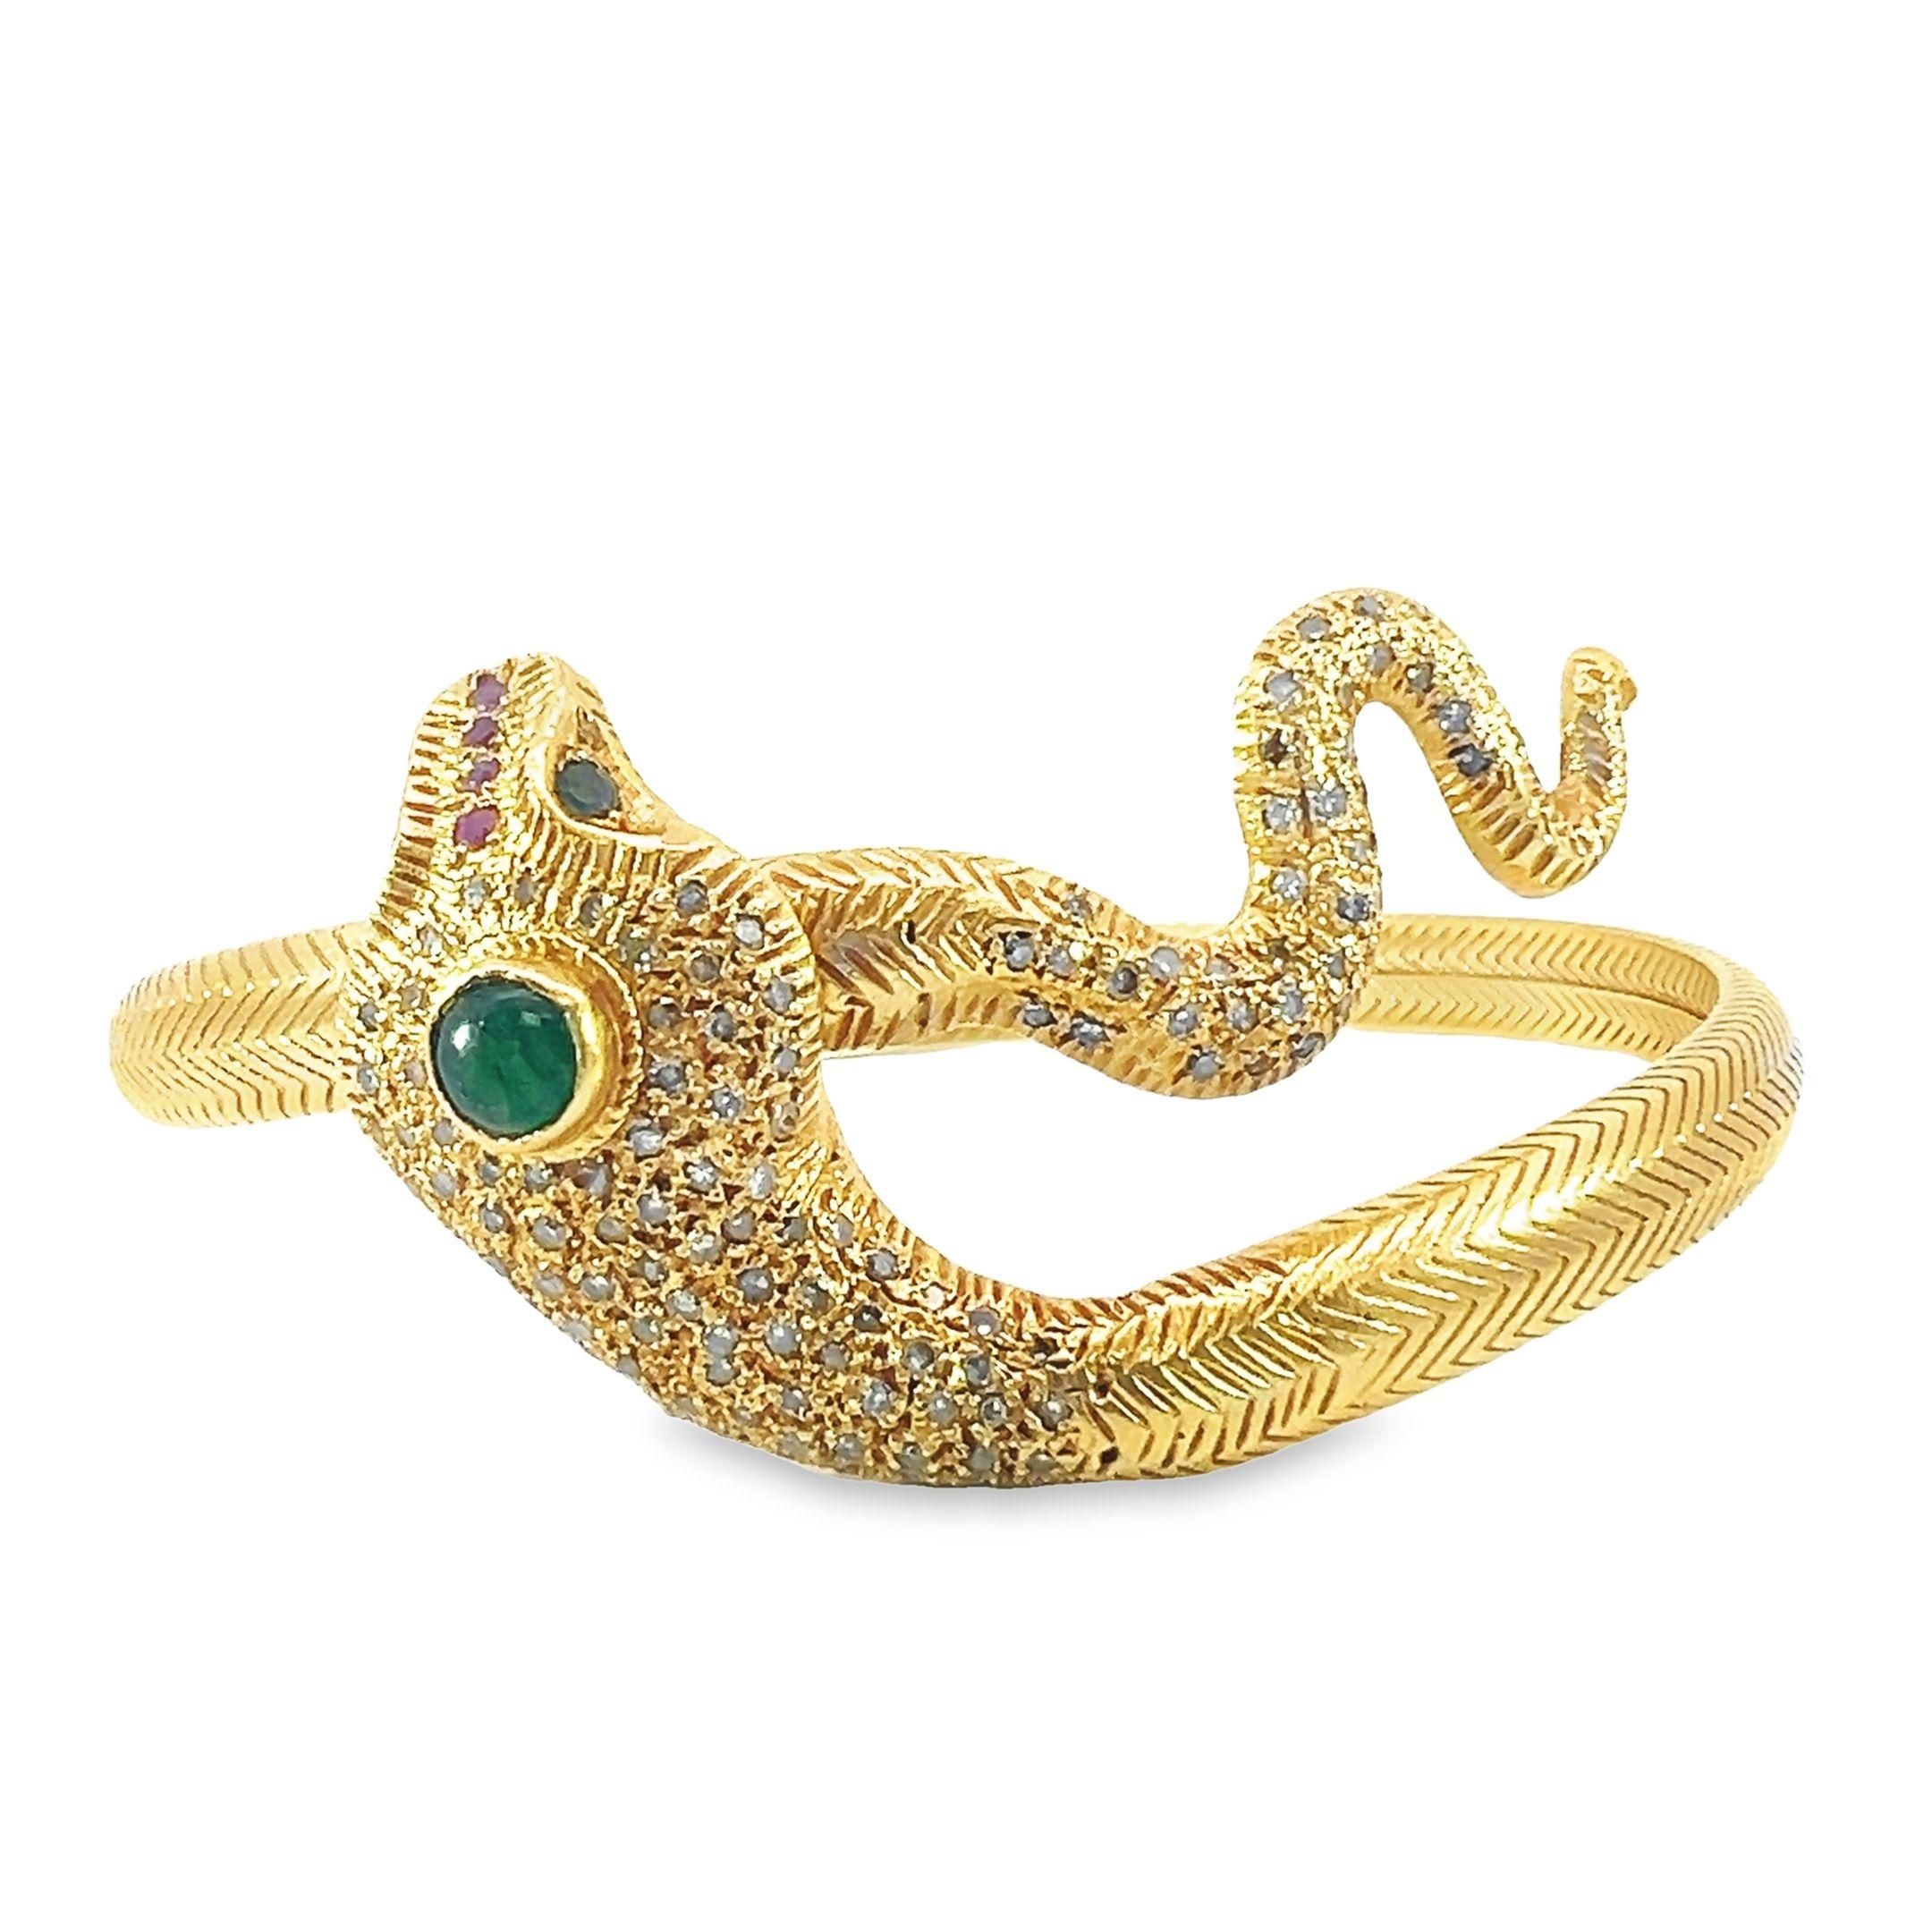 Magnifique bracelet serpent en or massif 18 carats composé de diamants naturels de 2,30 carats, d'émeraudes de 0,45 carat et de rubis de 0,04 carat.  Ses yeux sont sertis de pierres d'émeraude fascinantes qui captiveront tous les observateurs. 
